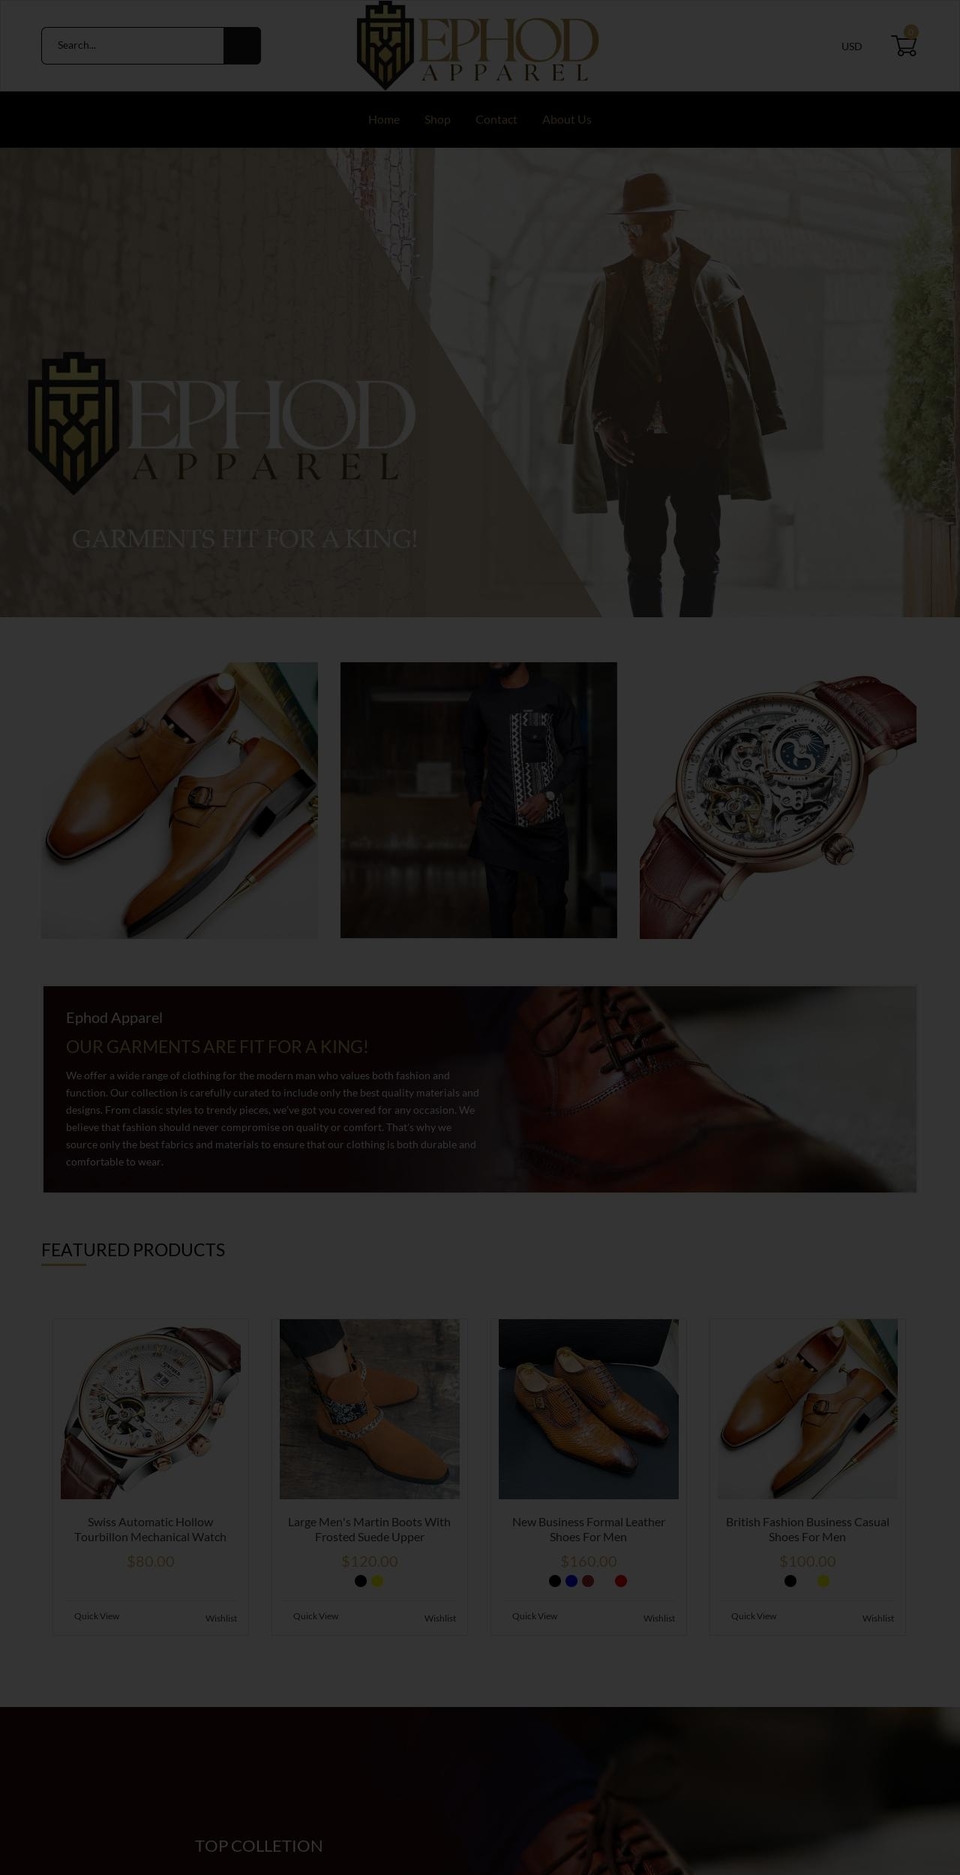 ephodapparel.com shopify website screenshot